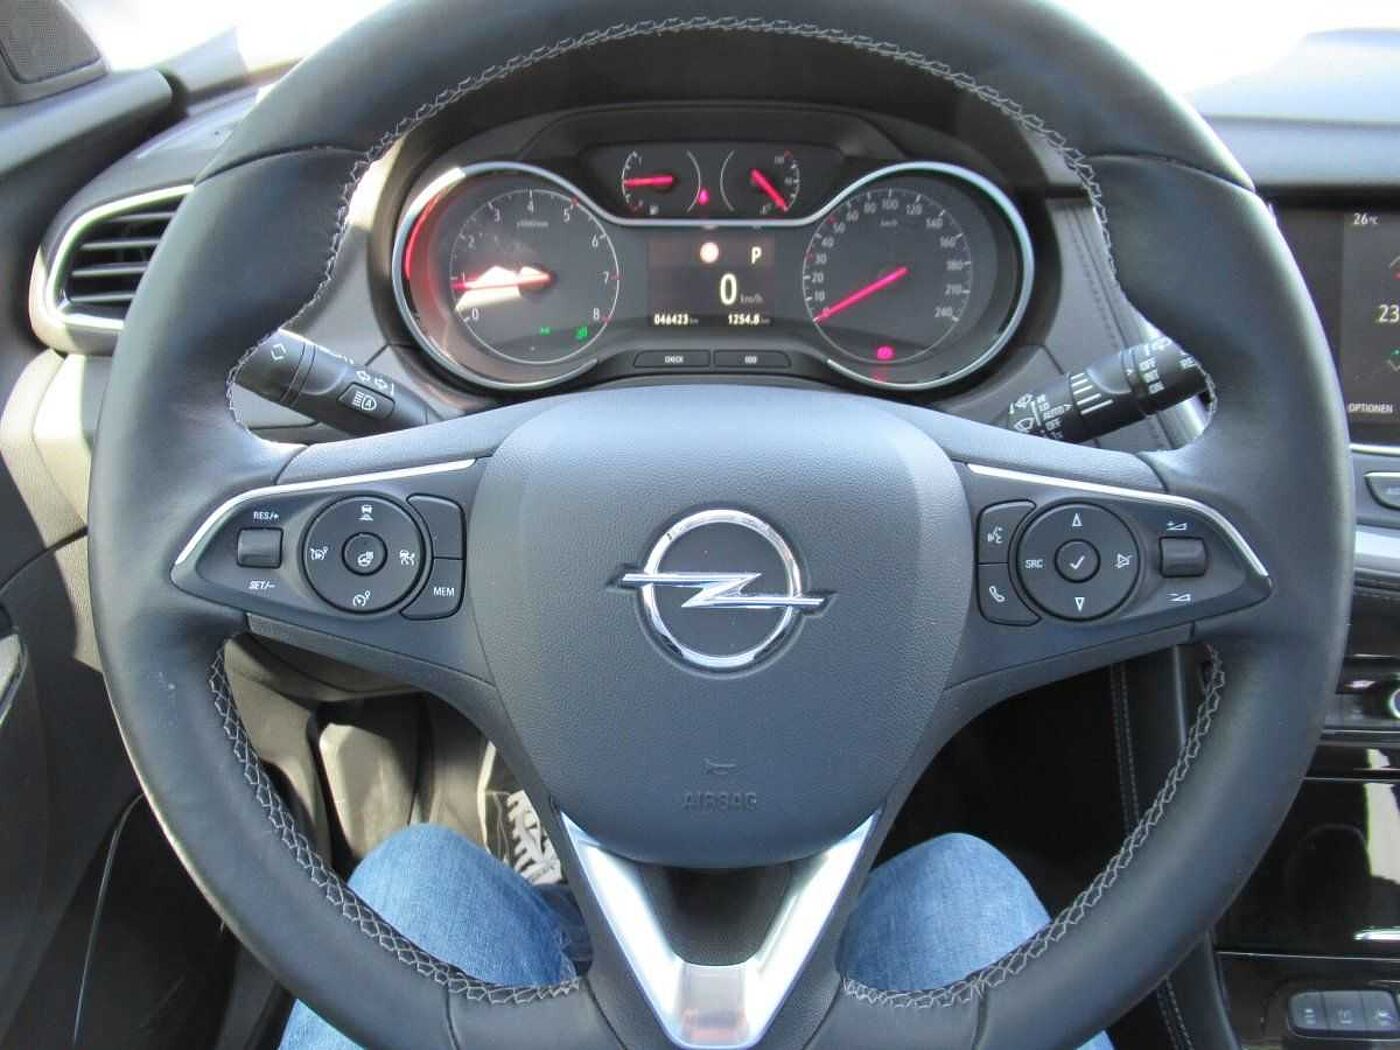 Opel  Ultimate